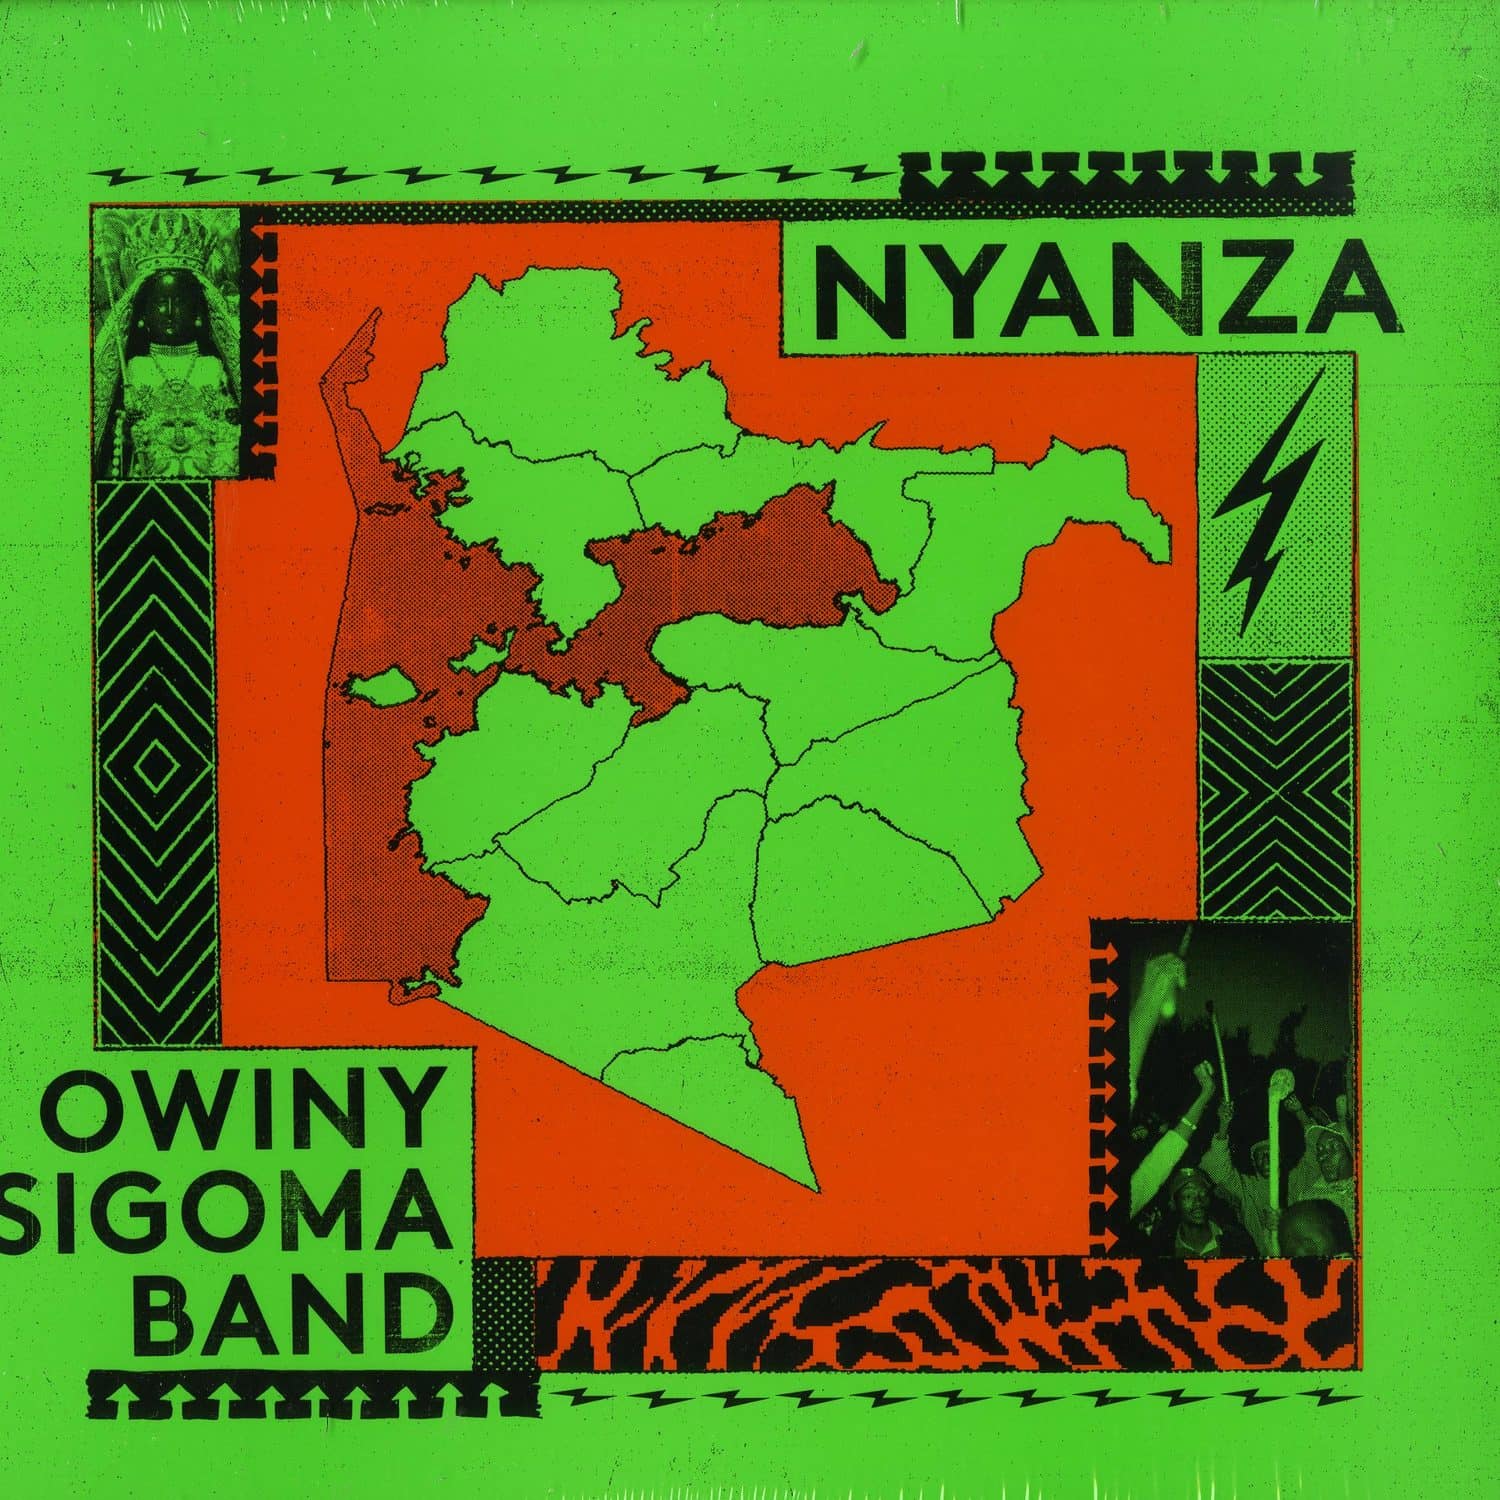 Owiny Sigoma Band - NYANZA 